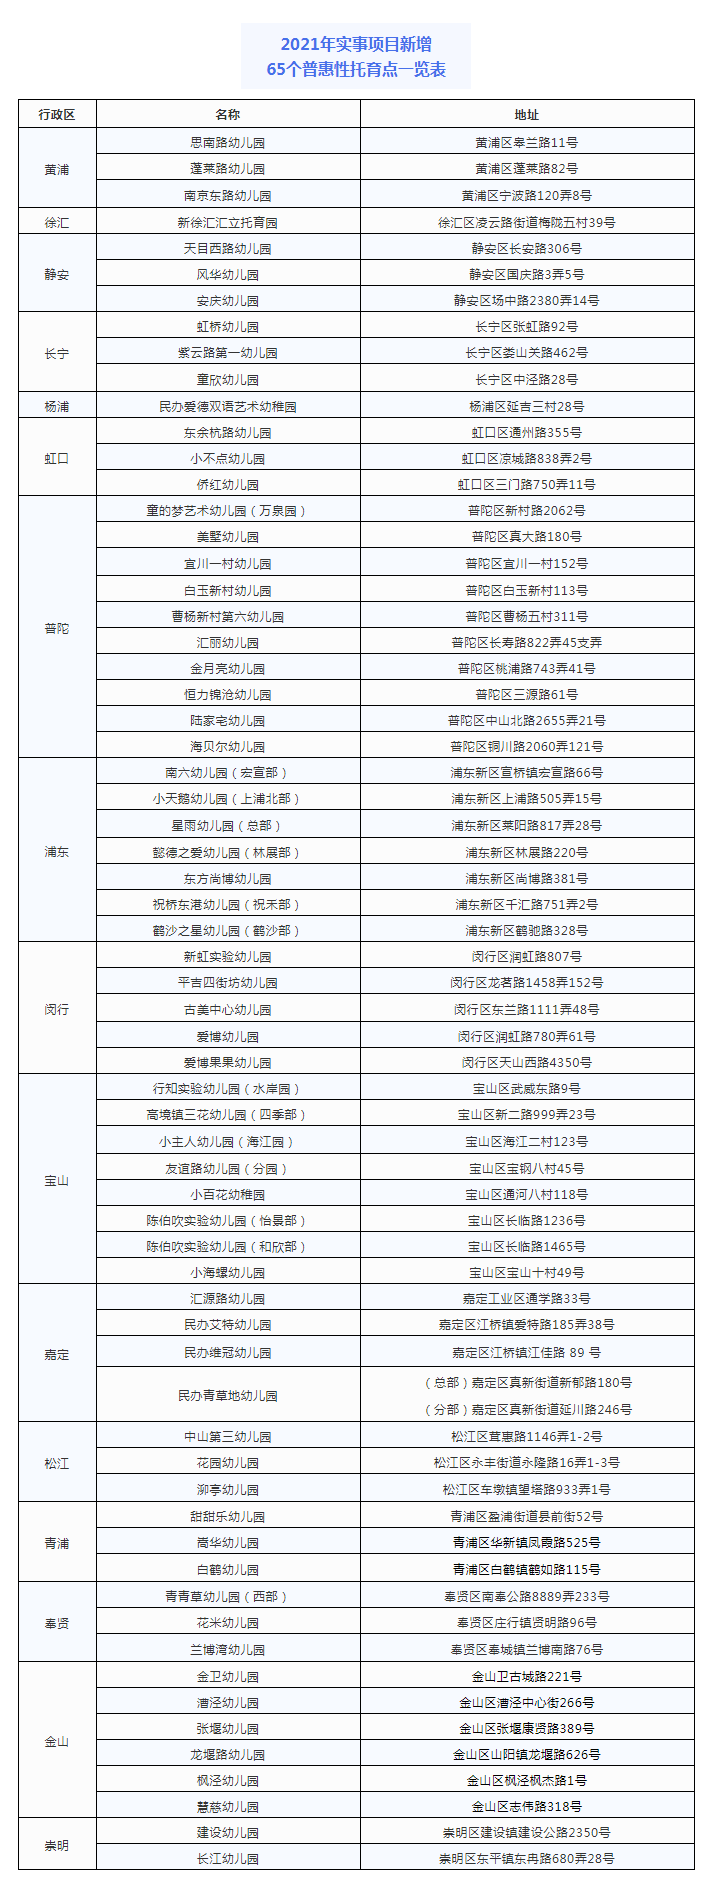 2021年上海新增65个普惠性托育点 提前超额完成全年工作